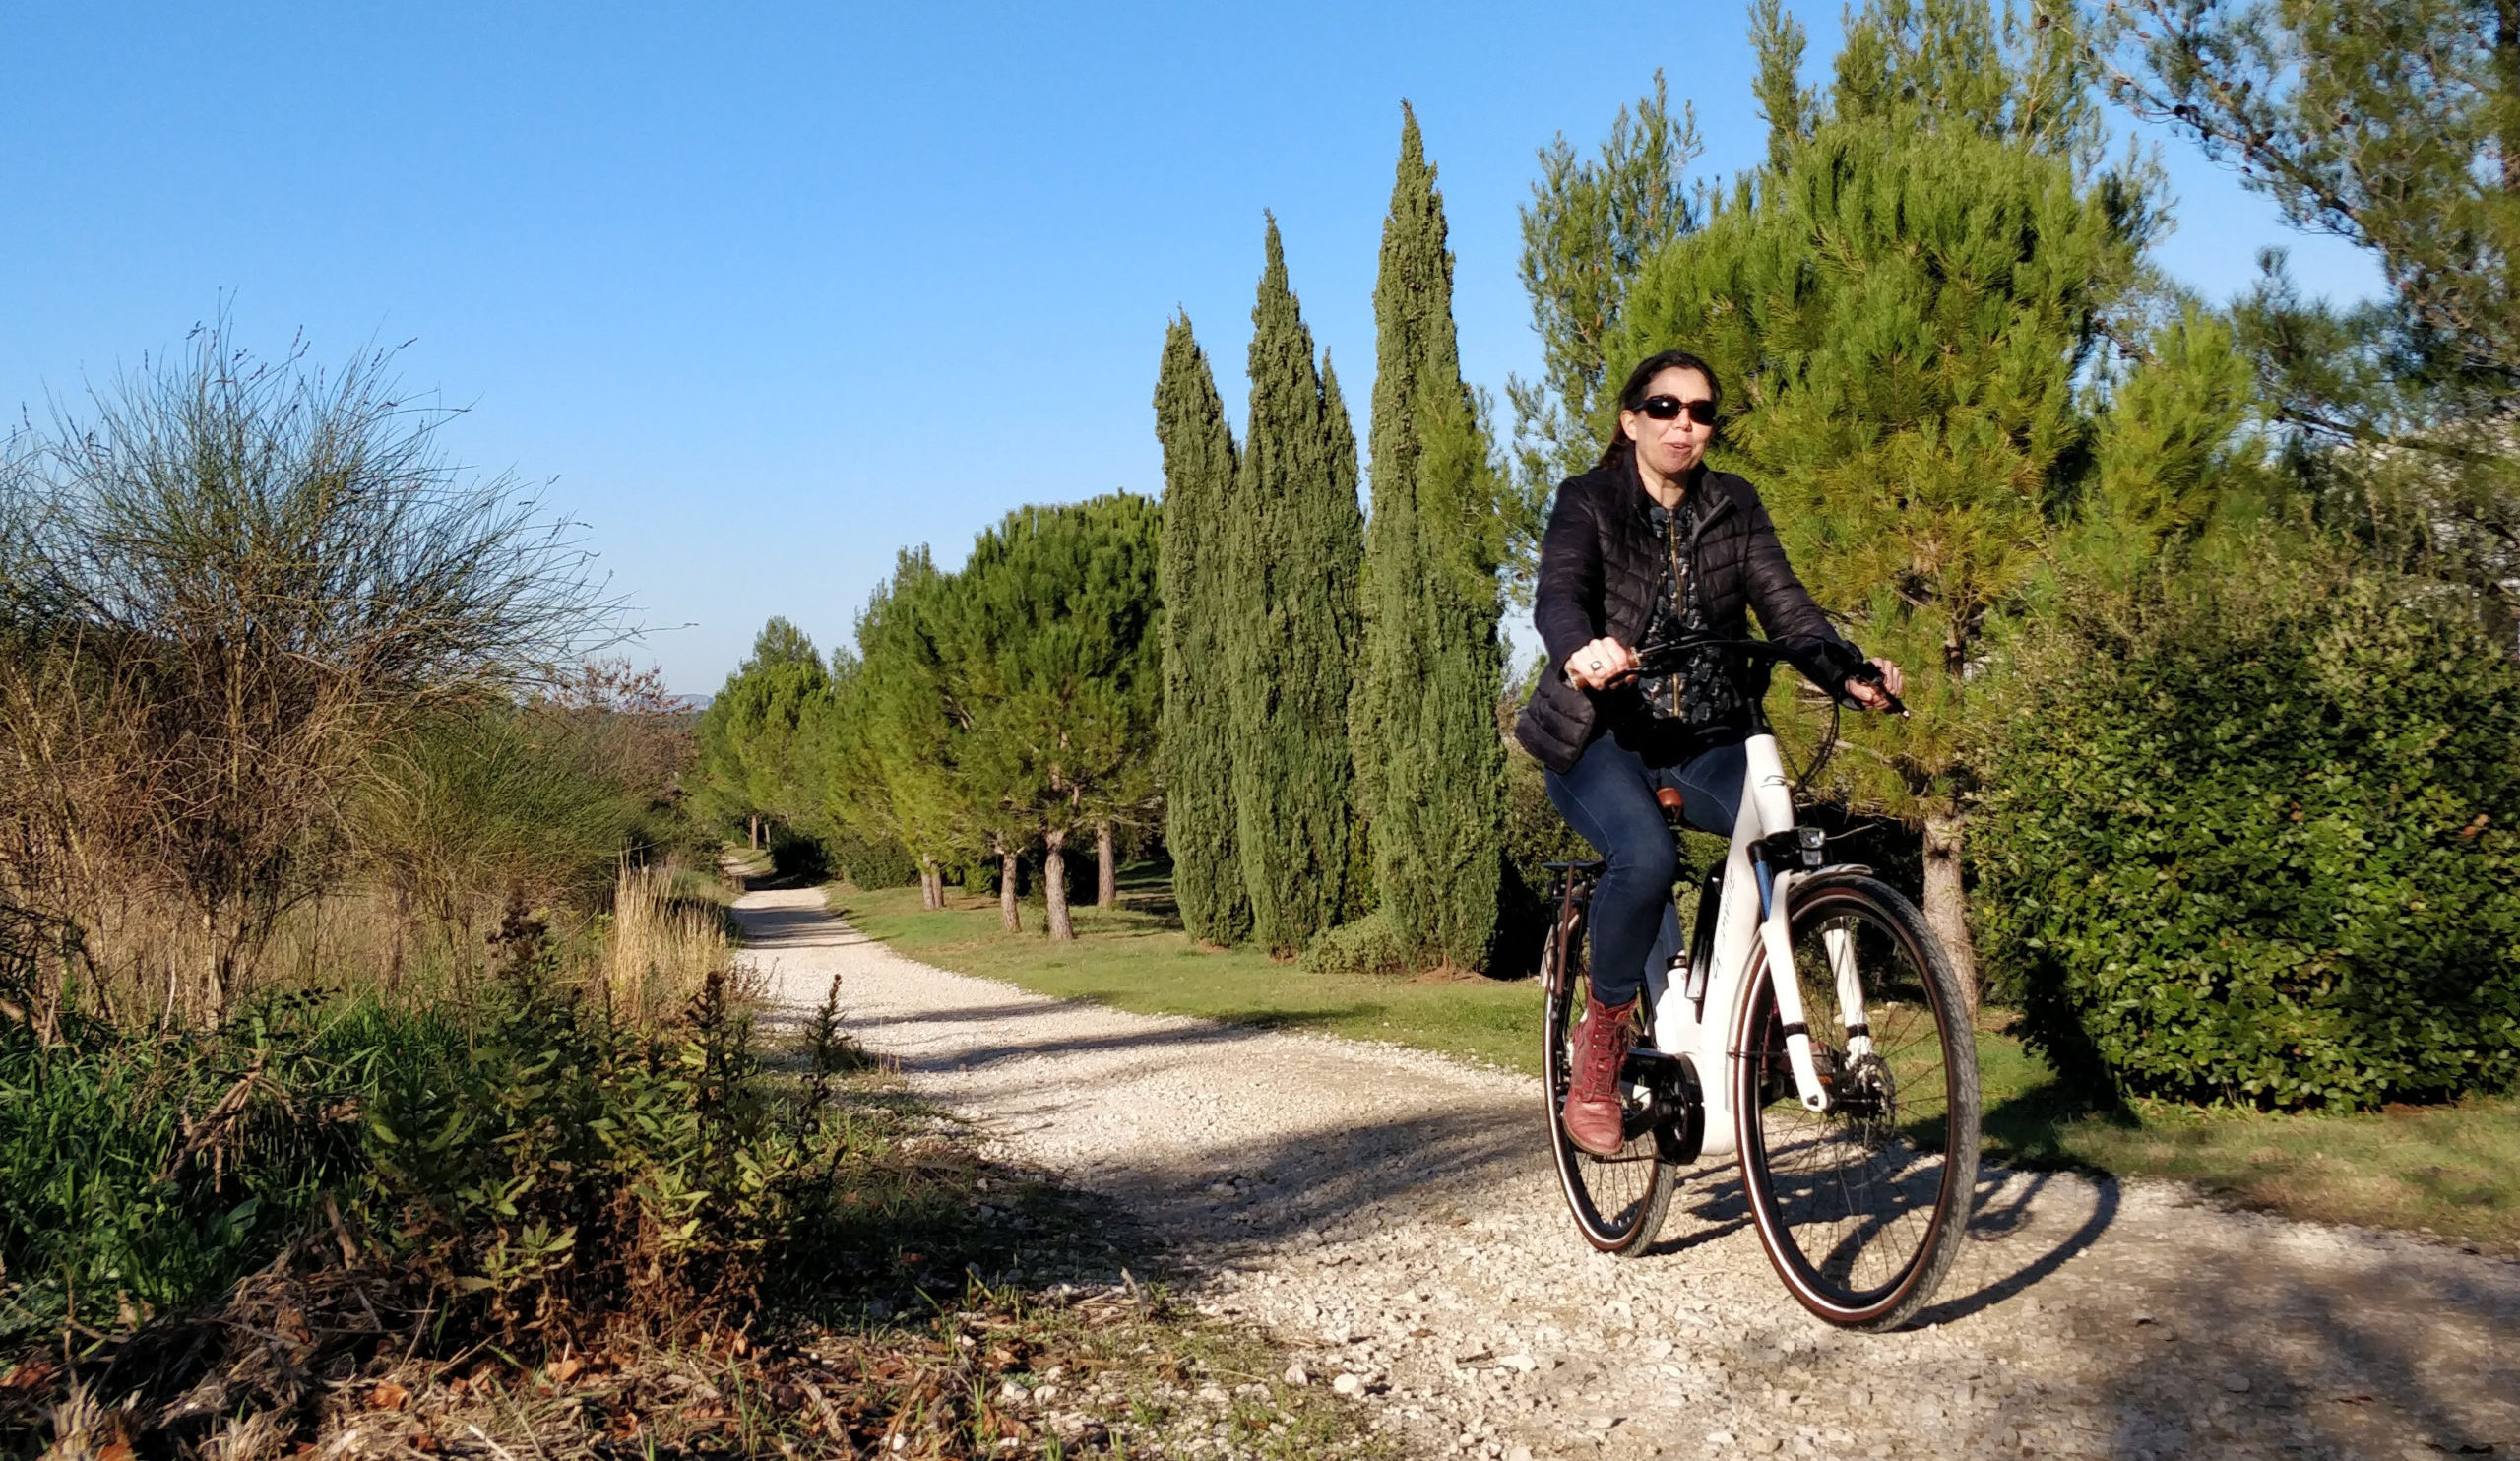 Louez un vélo électrique pour 1 € par jour. Photo : Christophe Colrat